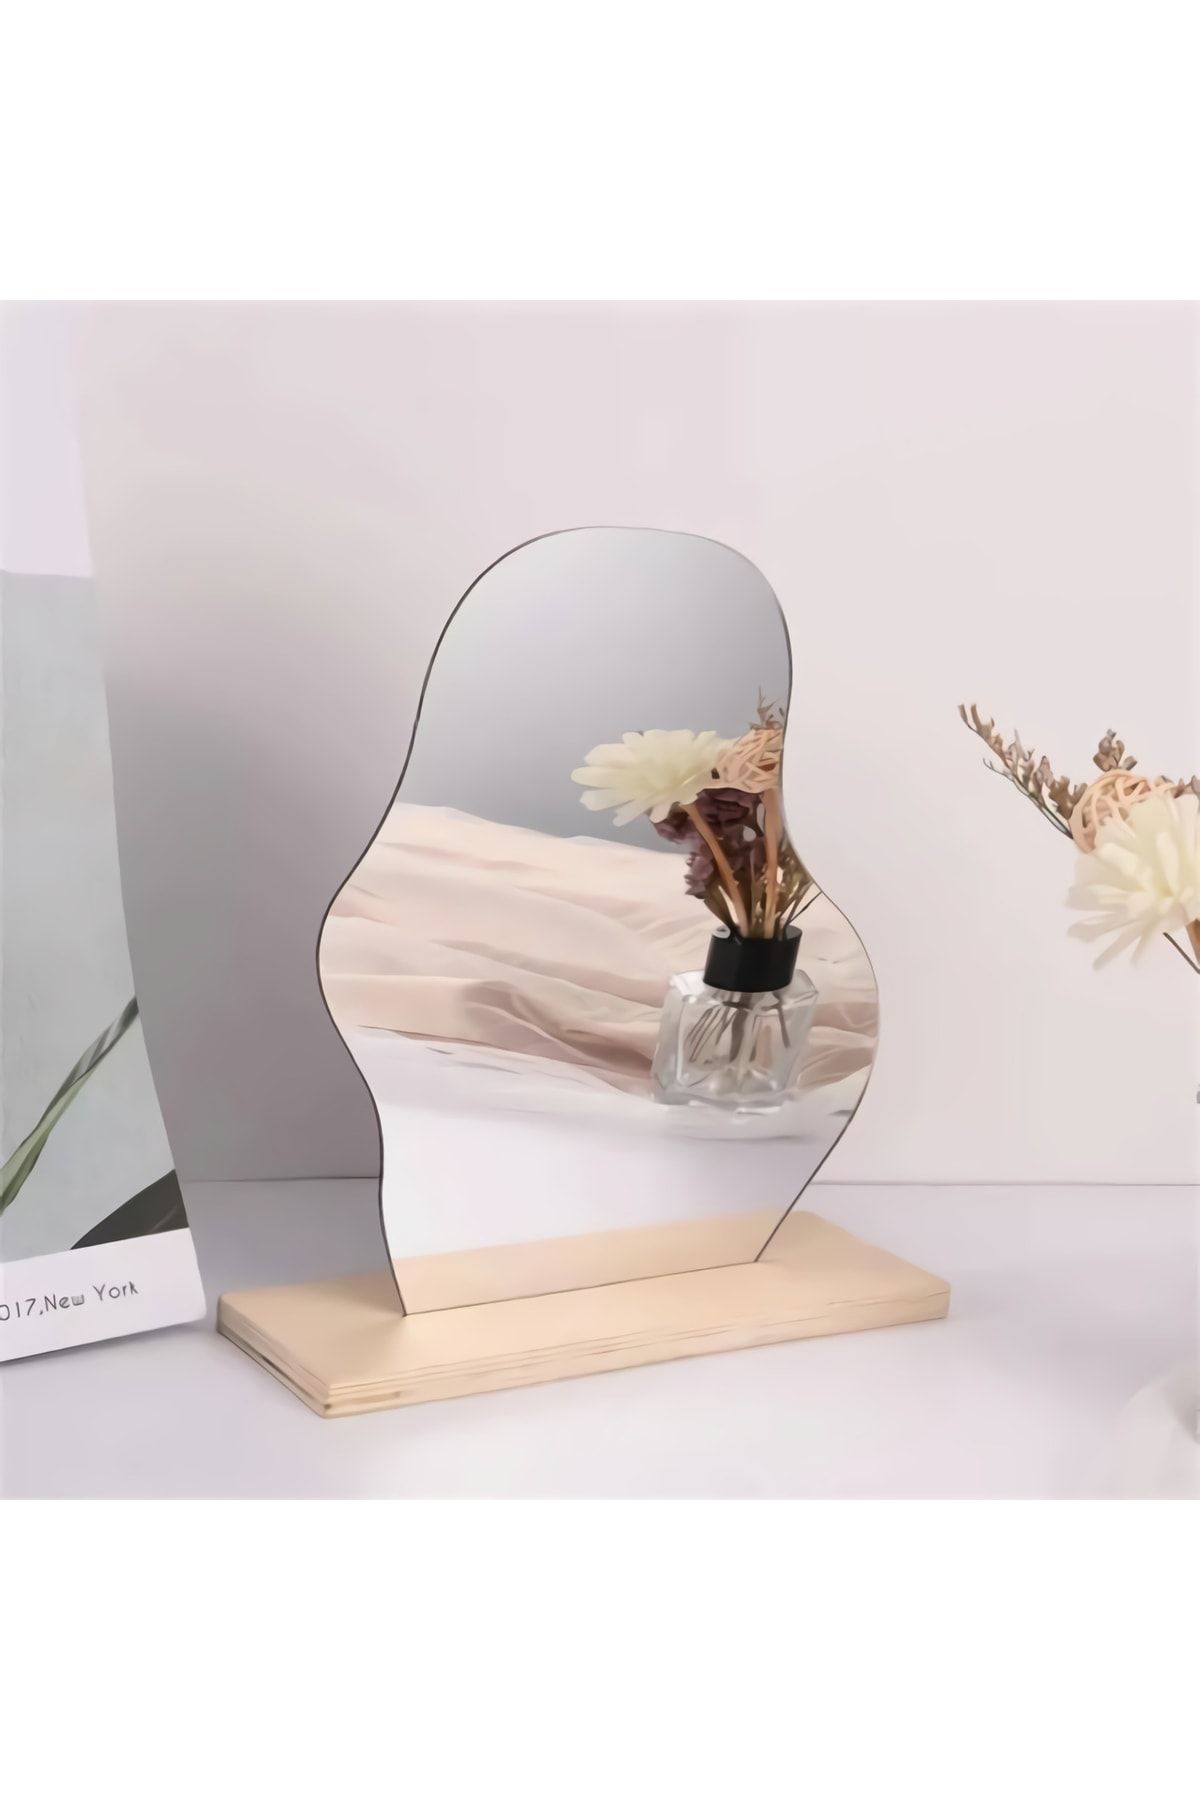 FNC CONCEPT Makyaj Aynası Ahşap Asimetrik Ayna Dekoratif Selfie Aynası Ev Dekorasyon 20x25 Cm